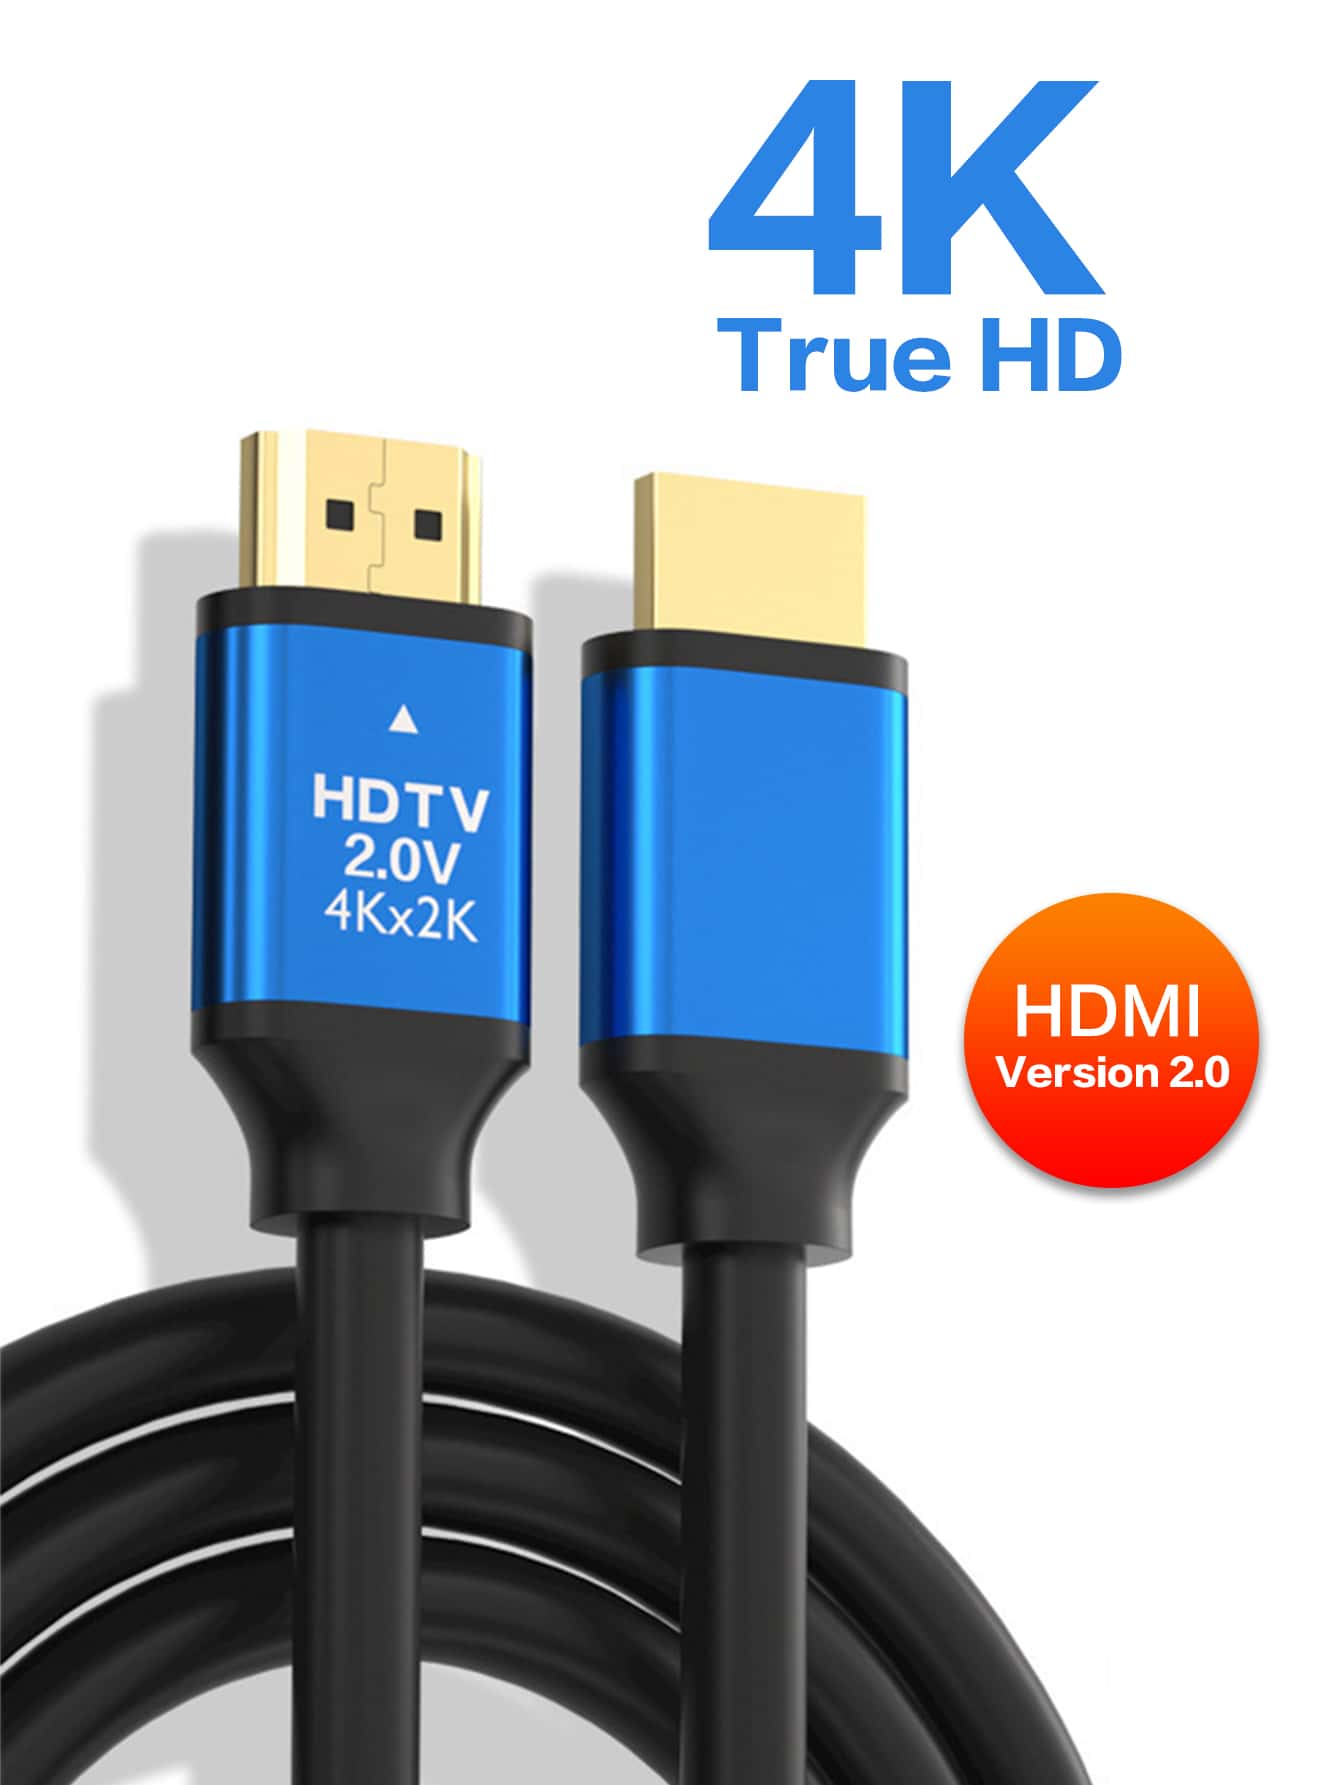 Cable HDMI a HDMI 3 metros plano Skyway v1.4